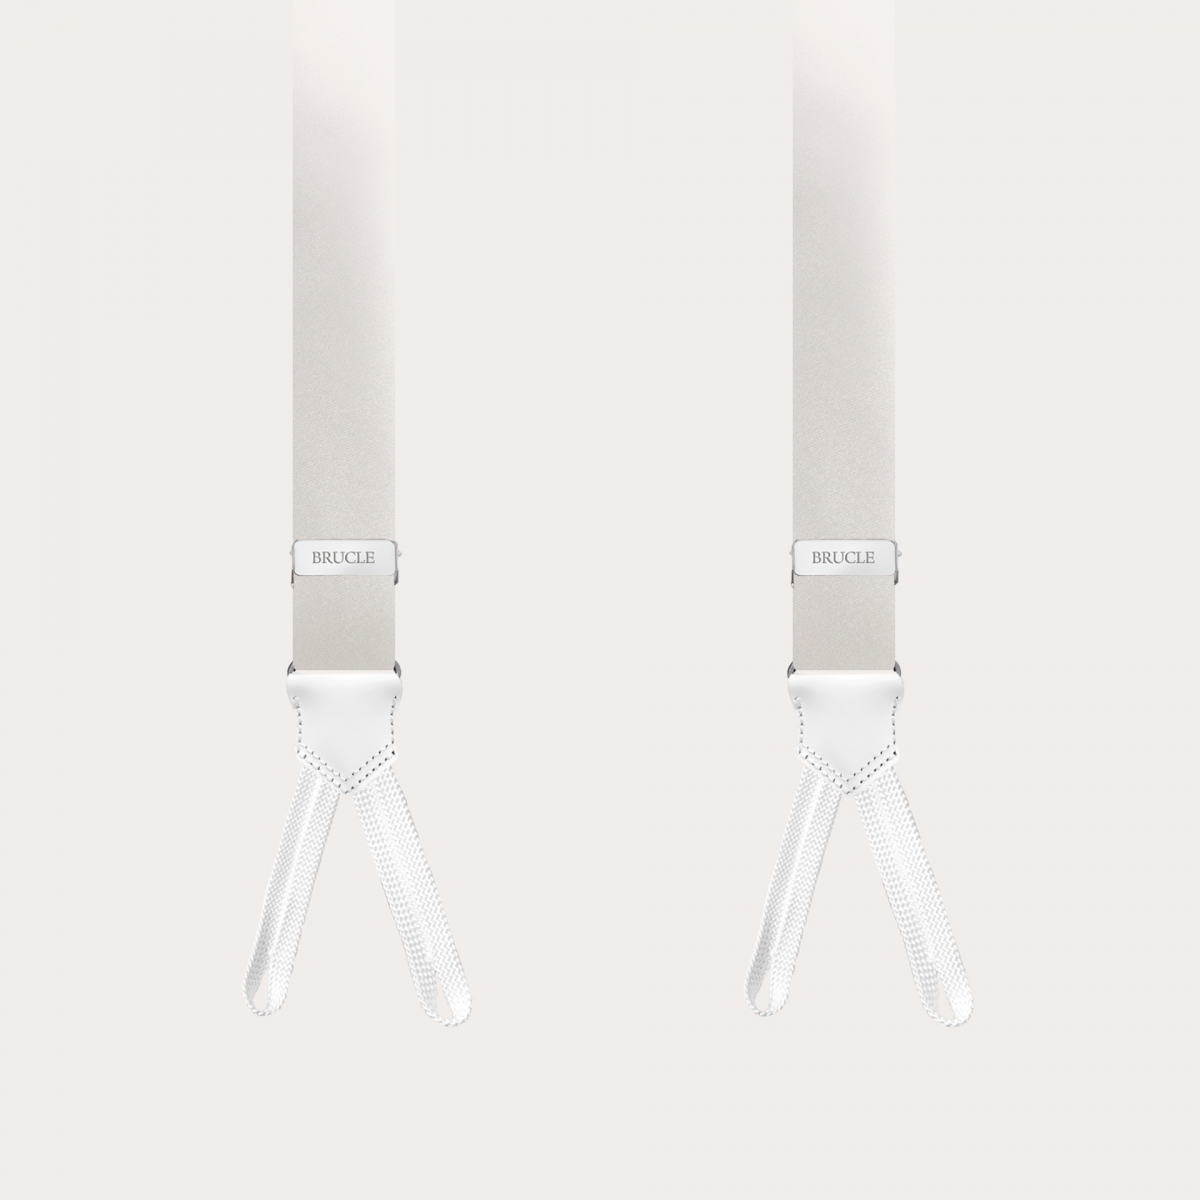 Bretelle strette bianche in seta con asole